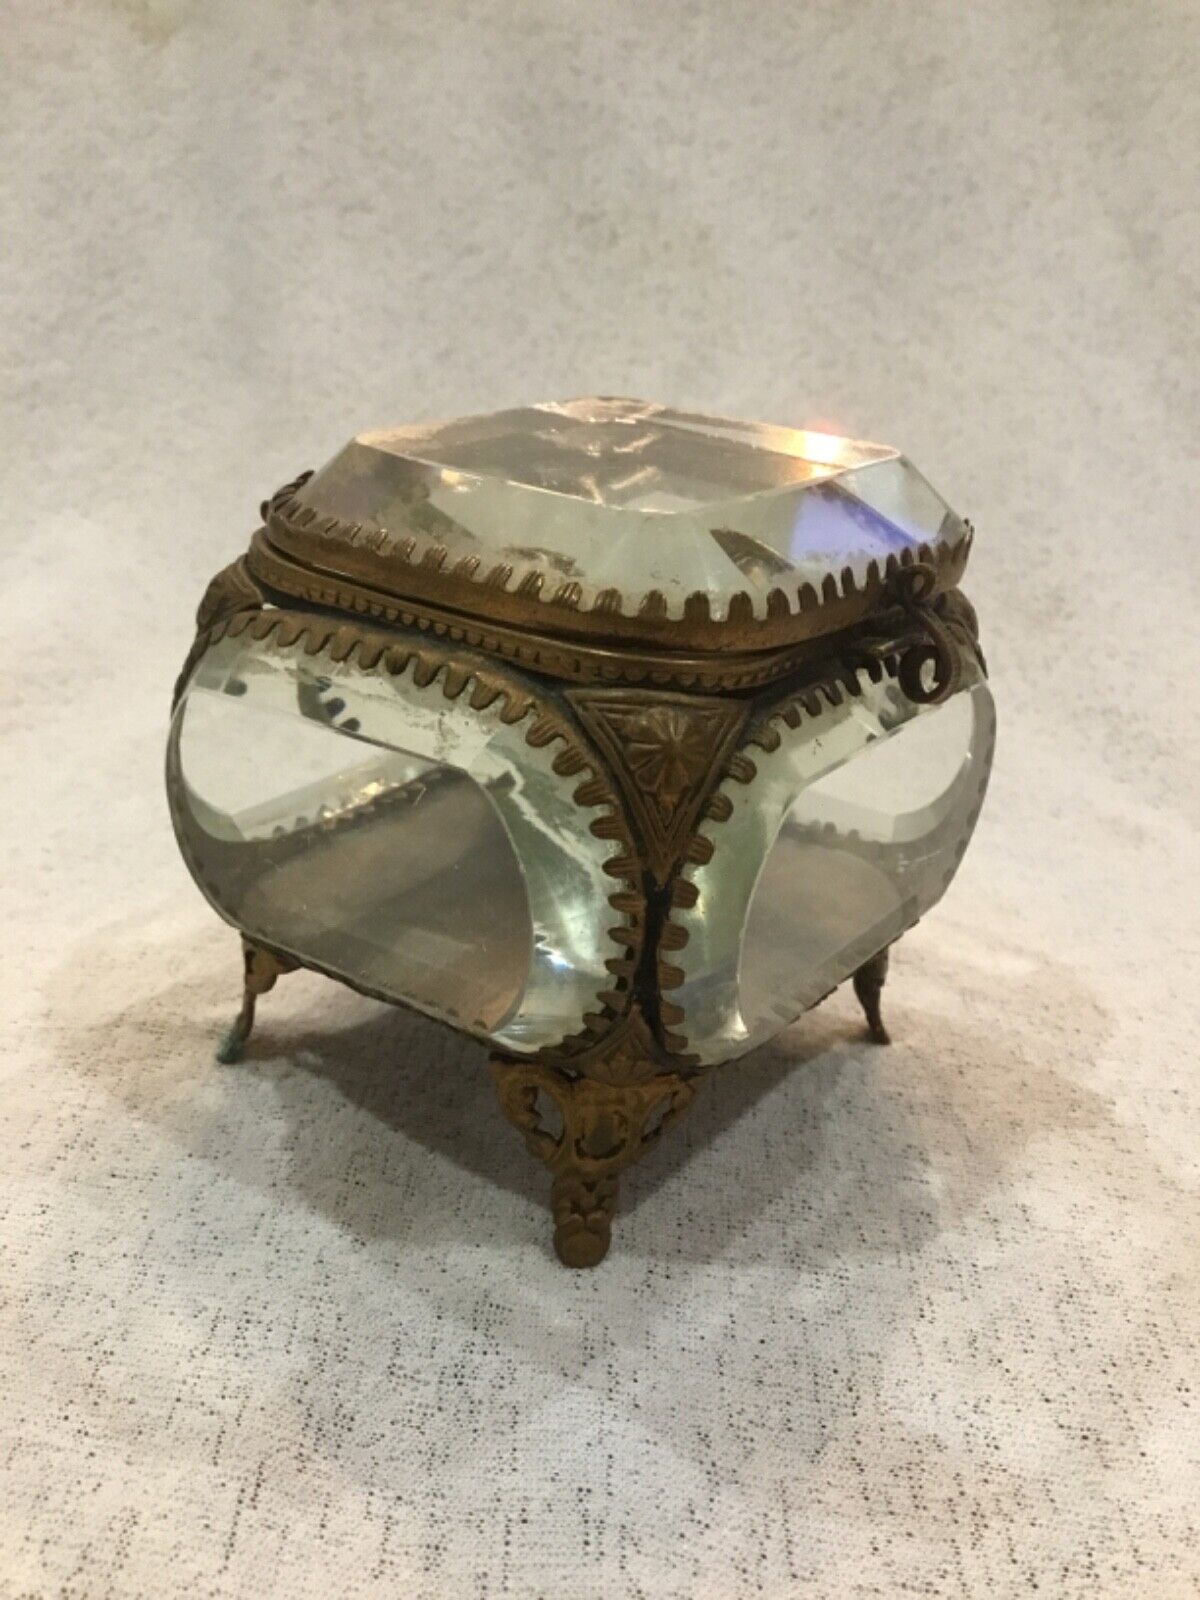 French Sourdurviere Ormolu Jewelry Bronze Glass Trinket Display Case Vitrine Box